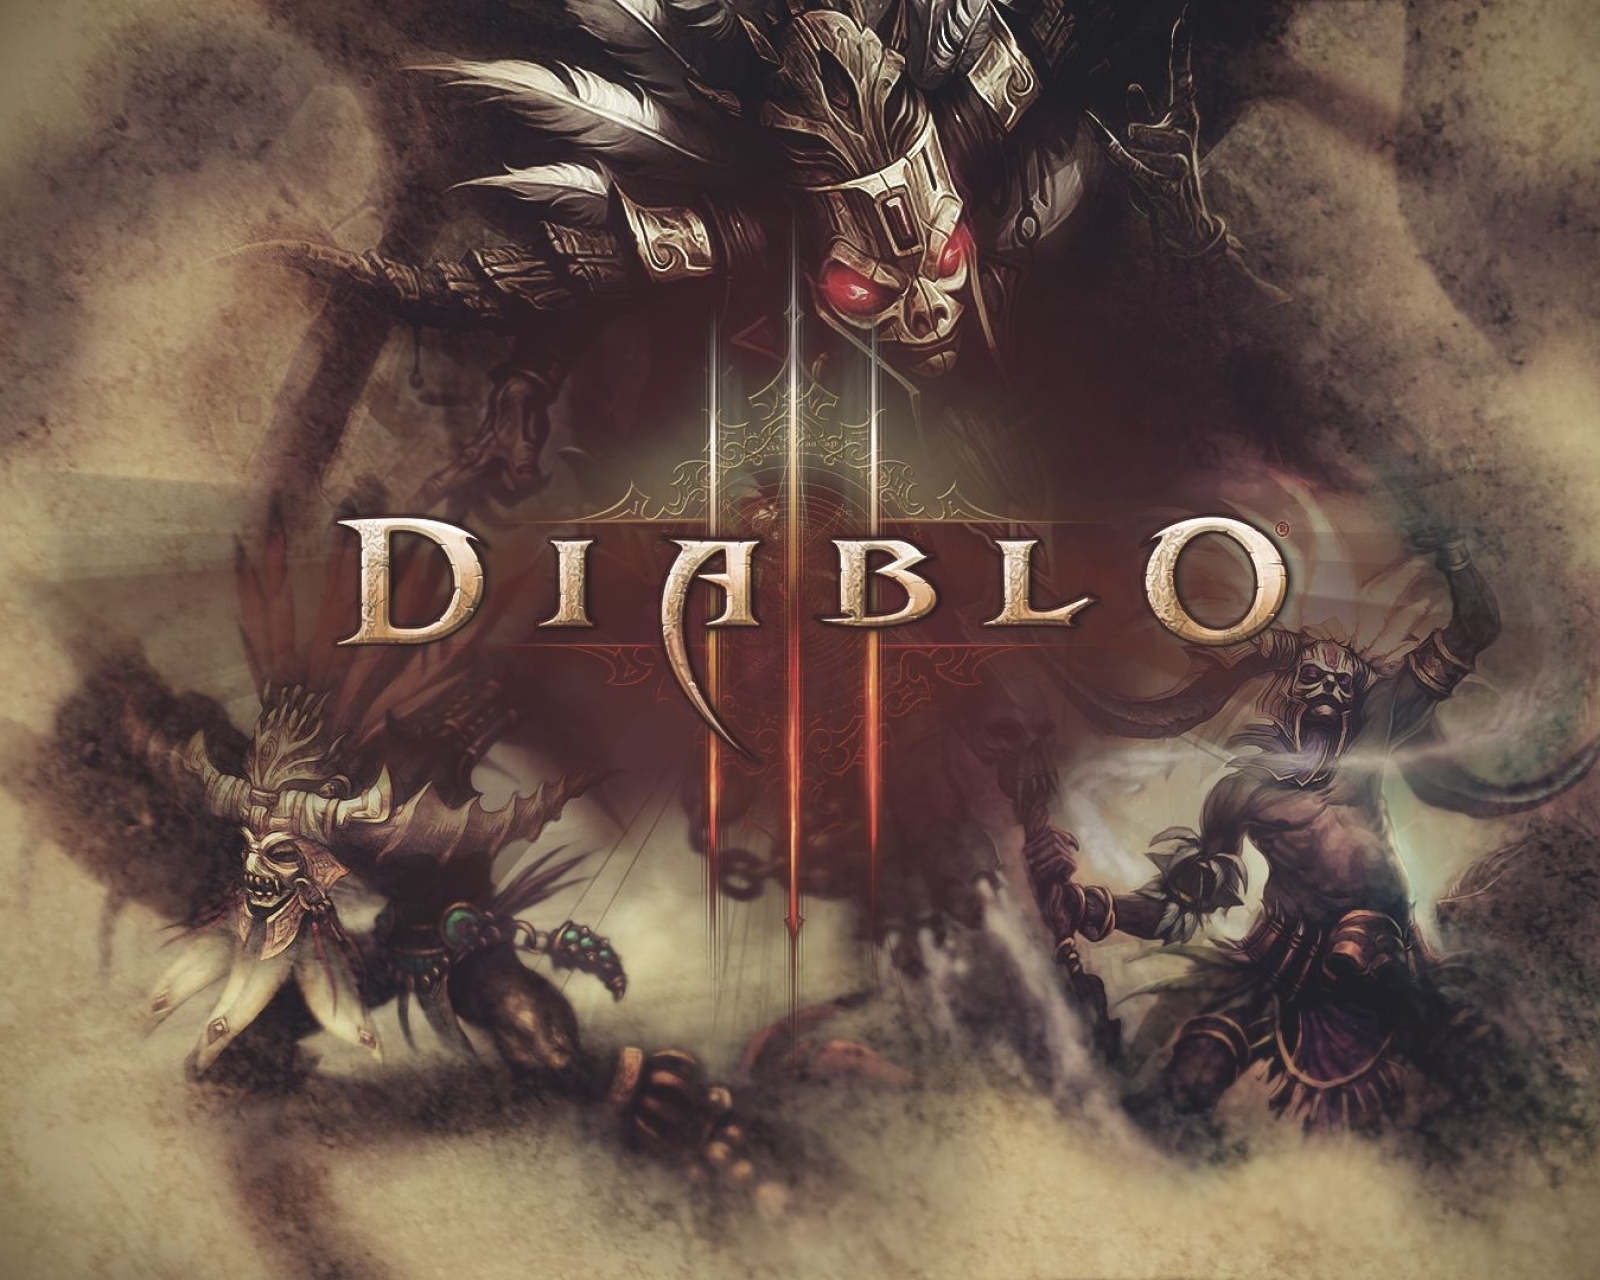 Скачать обои бесплатно Видеоигры, Диабло Iii, Знахарь (Diablo Iii), Диабло картинка на рабочий стол ПК